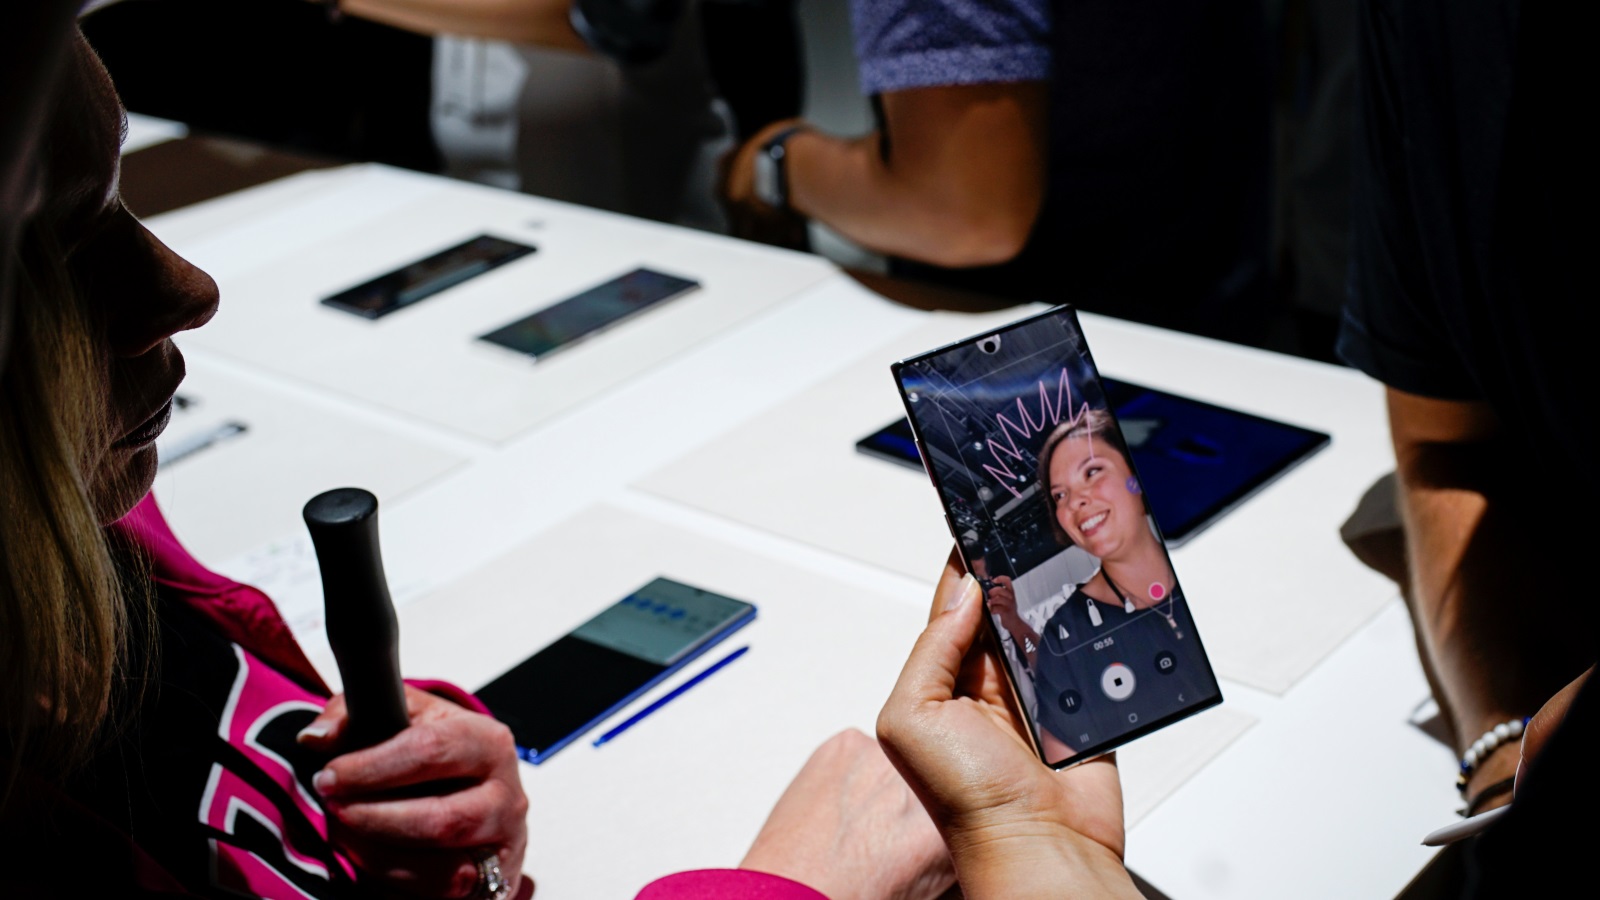  سامسونغ ألغت الماسح الضوئي للقزحية، وهي العلامة المميزة لهواتف نوت منذ عام 2016 (رويترز)